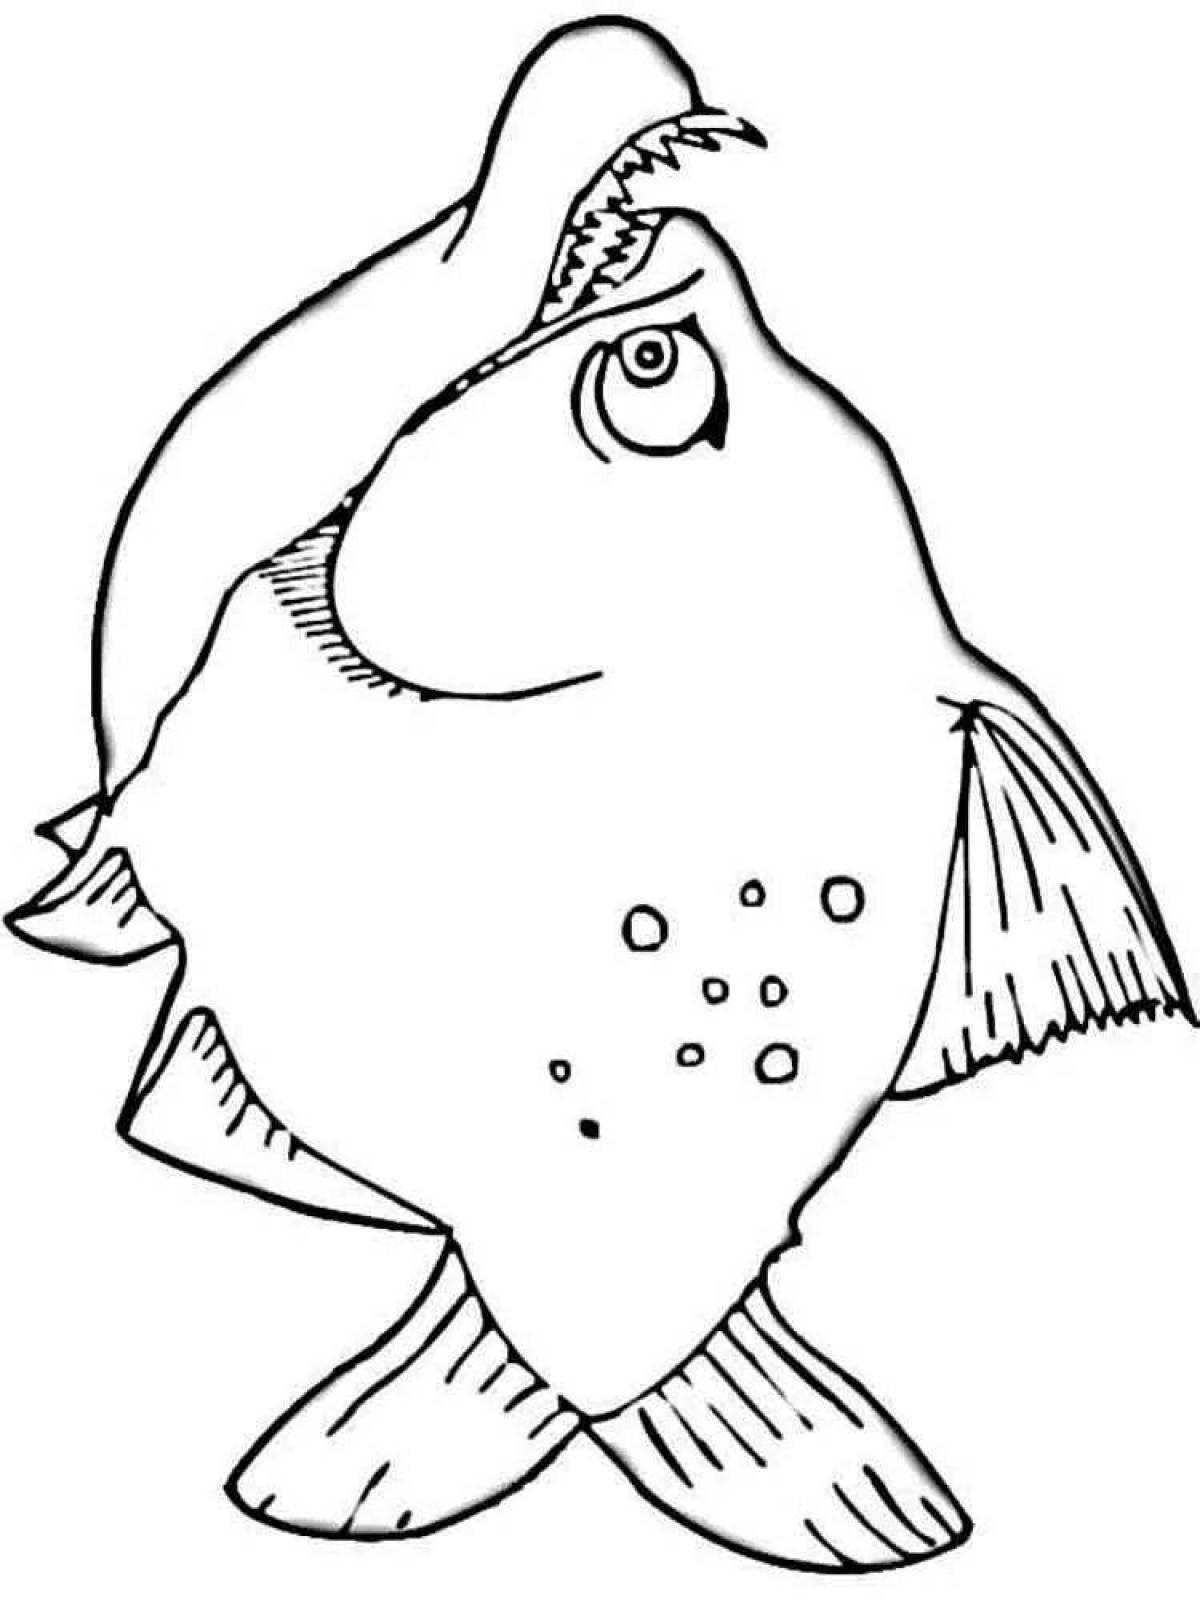 Humorous piranha coloring book